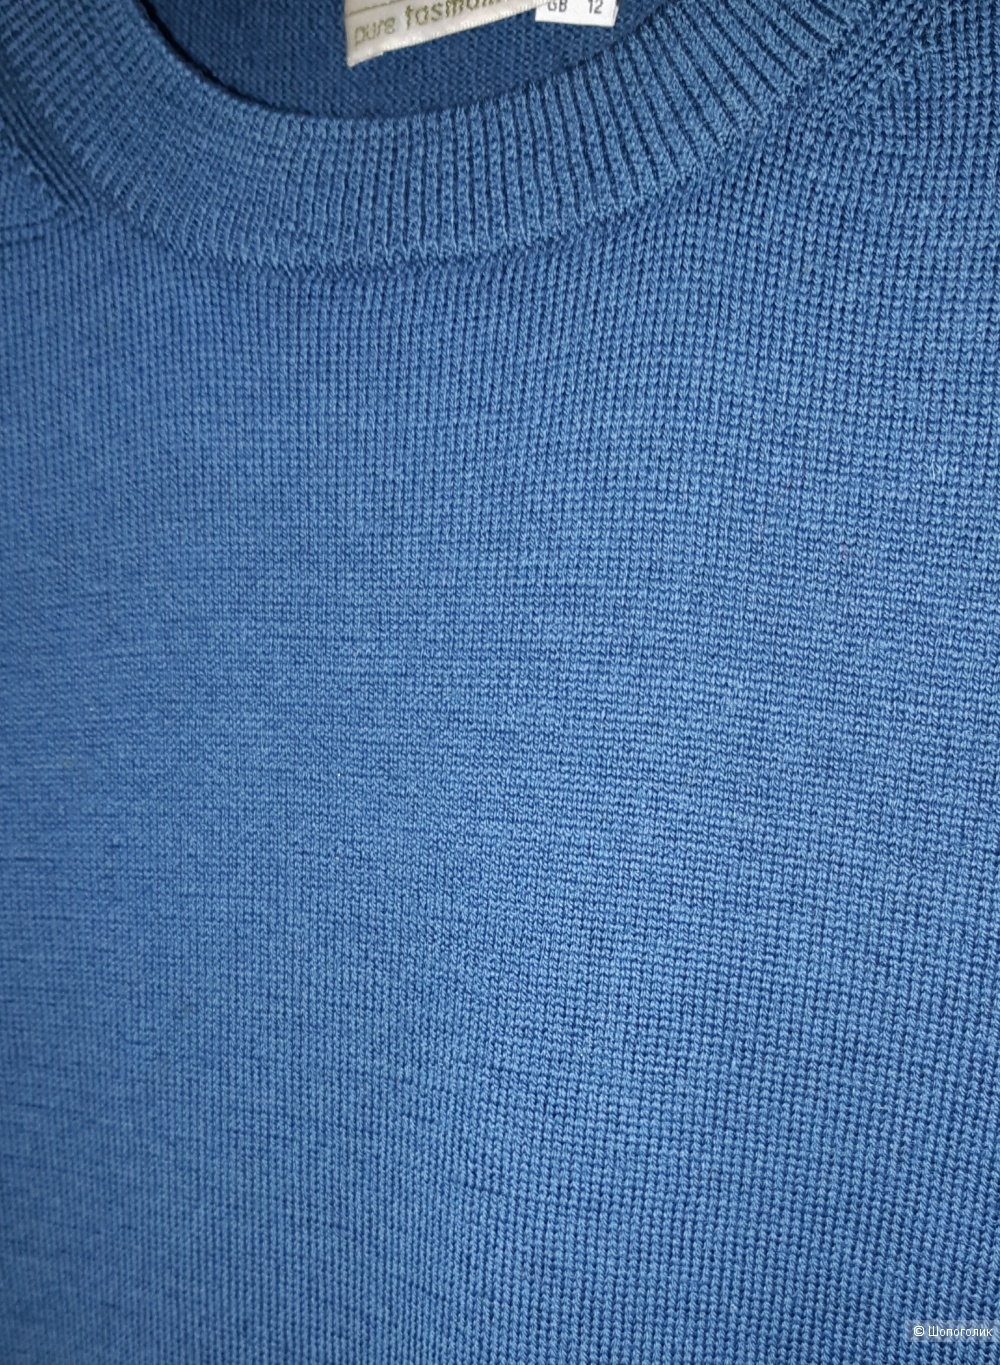 Шерстяной пуловер peter hahn, размер m